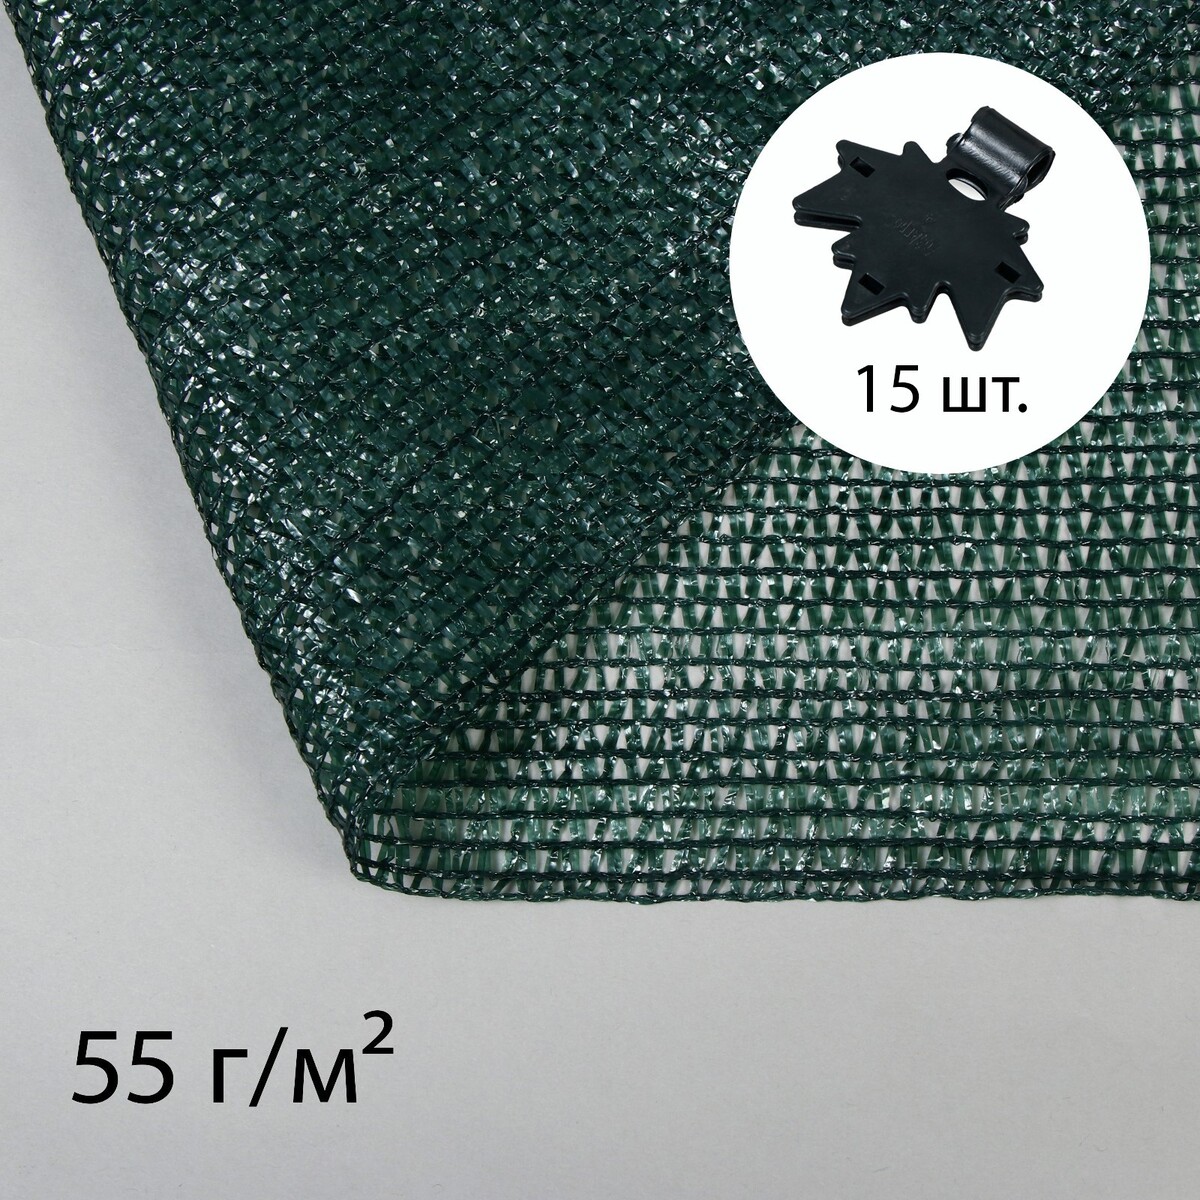 Сетка затеняющая, 5 × 2 м, плотность 55 г/м², зеленая, в наборе 15 клипс сетка затеняющая полиэтилен 300х500 см с клипсой 55% зеленая